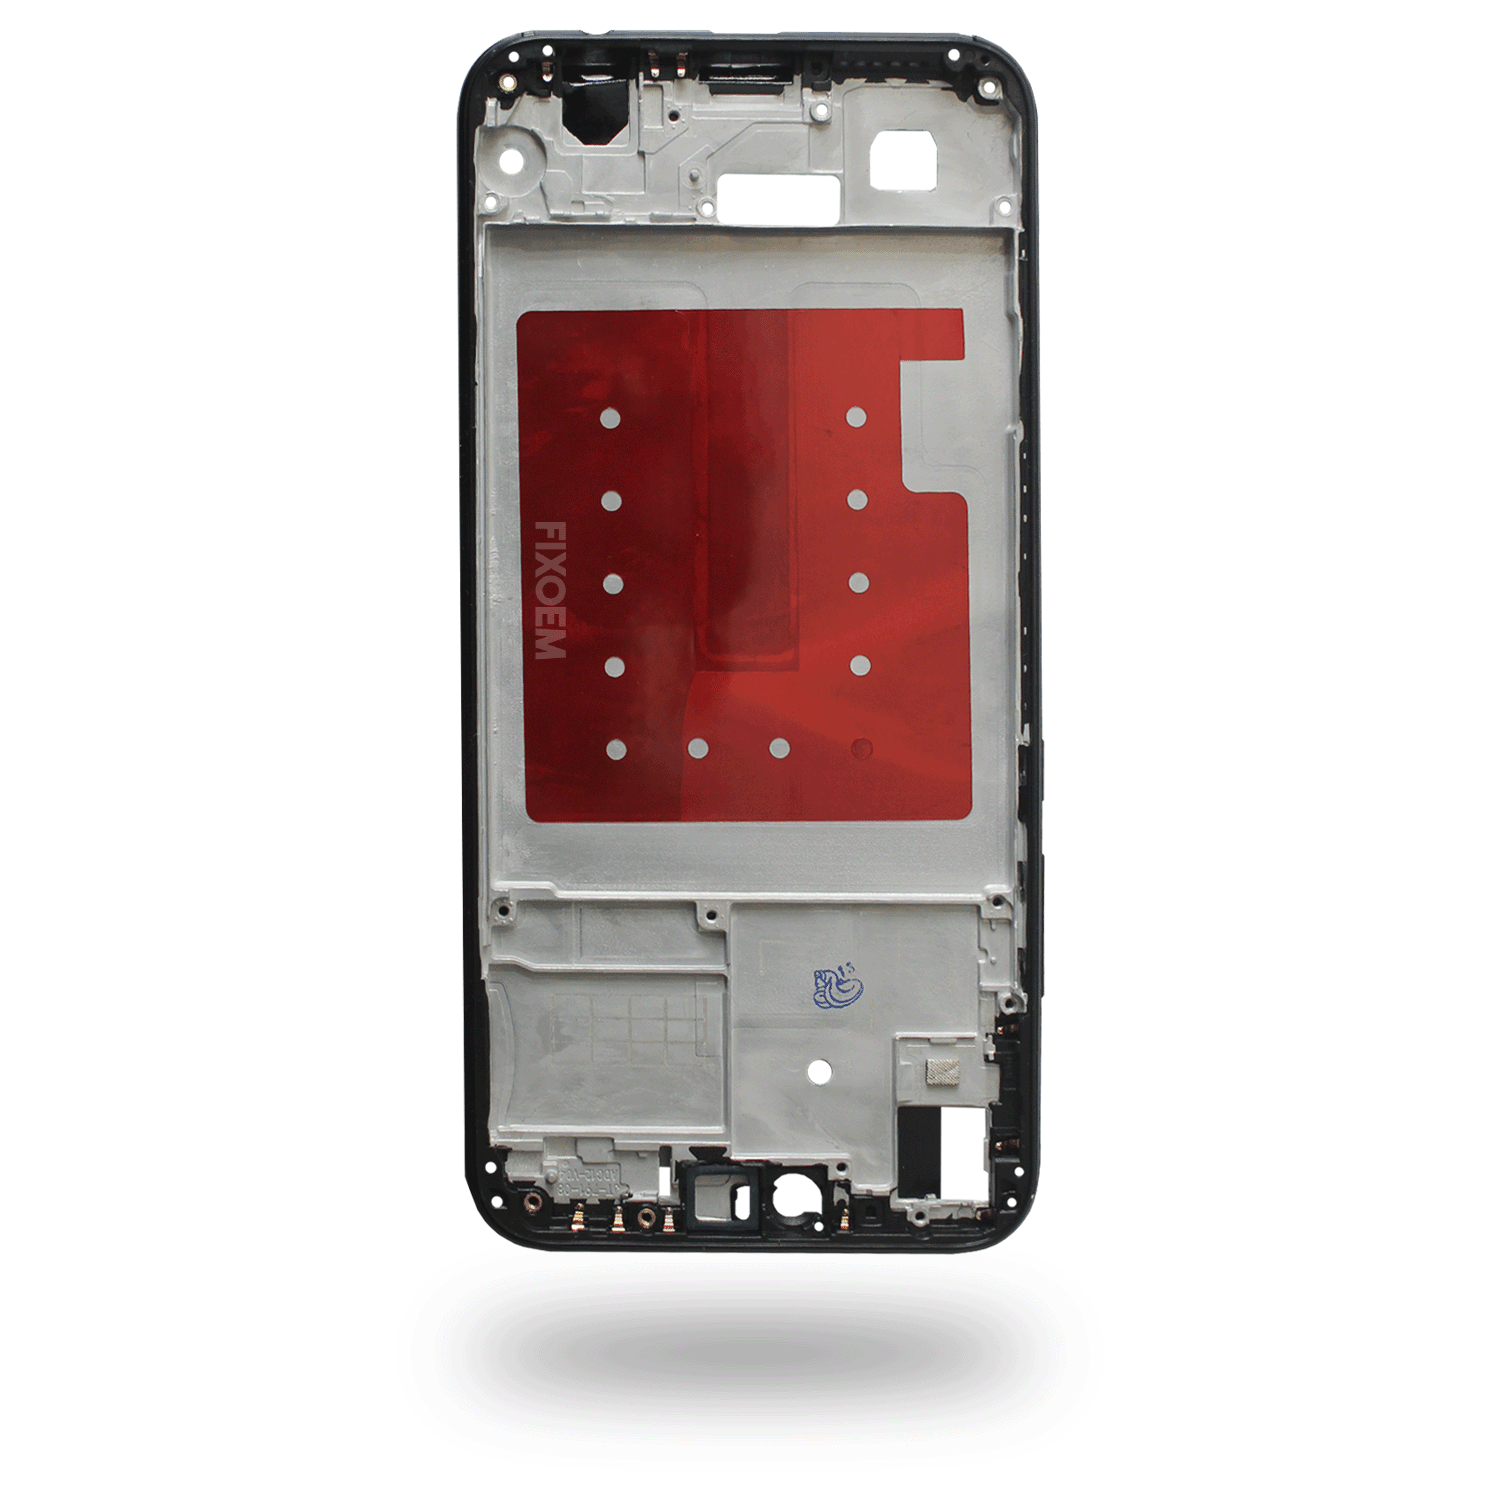 Bisel Huawei P20 Lite Ane-lx3 Ane-lx1 Ane-lx2 |+2,000 reseñas 4.8/5 ⭐